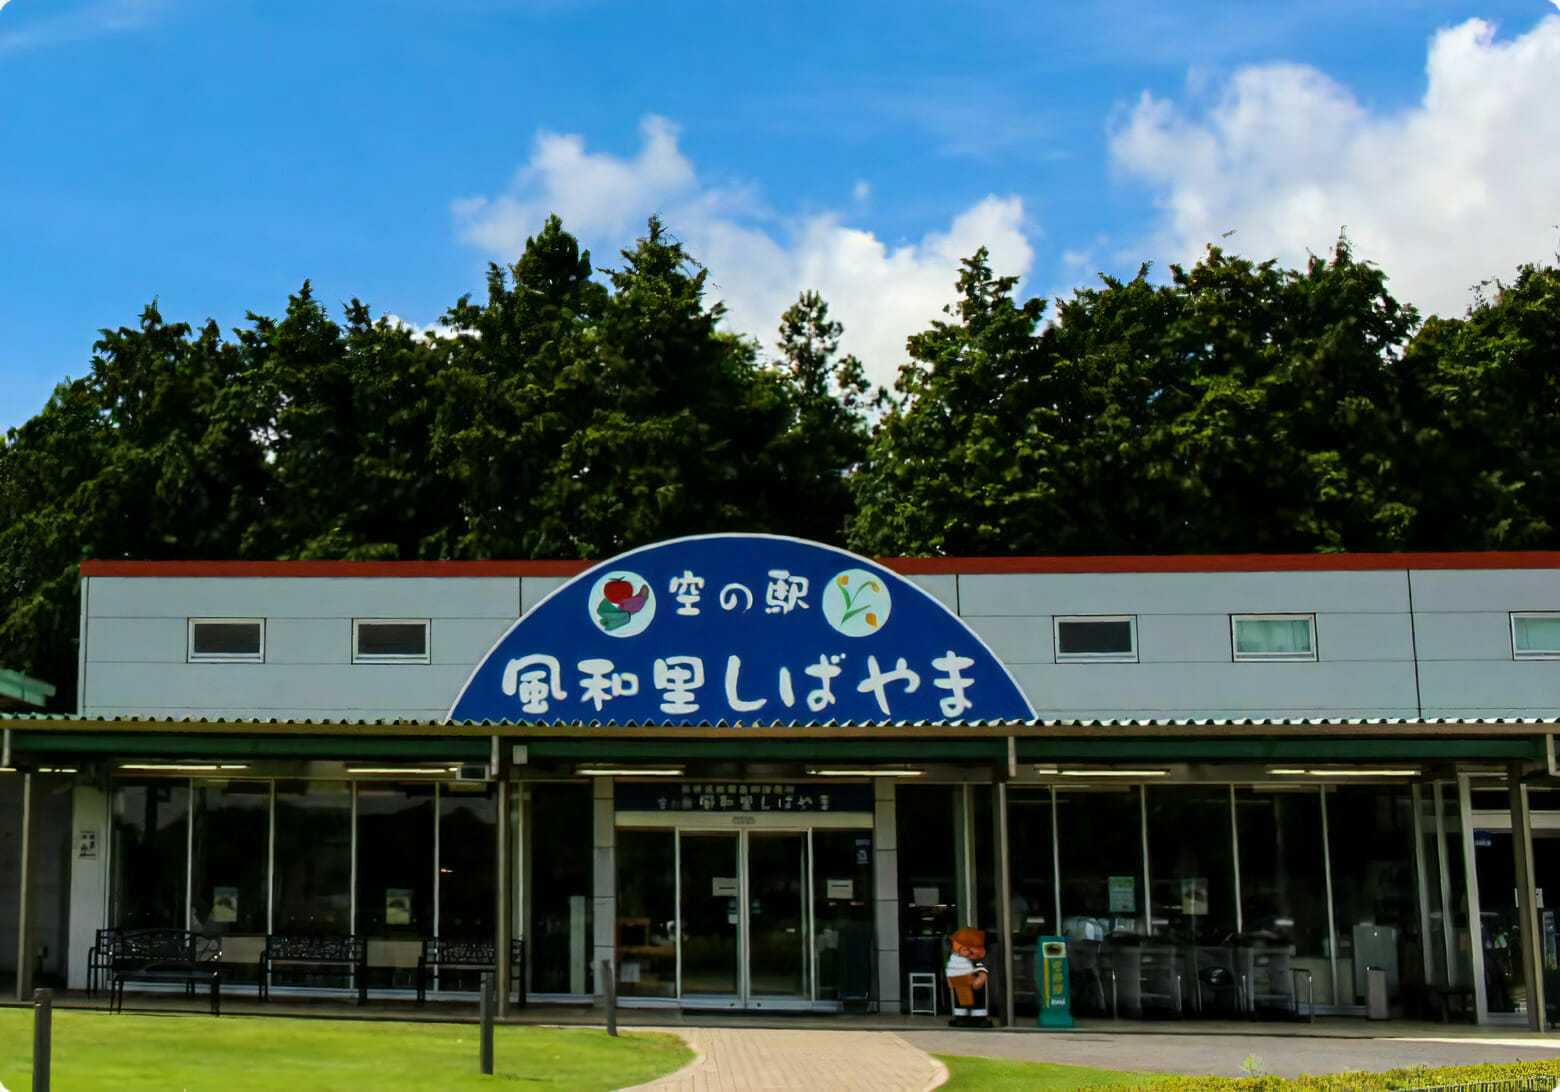 chiba prefecture tourist spot